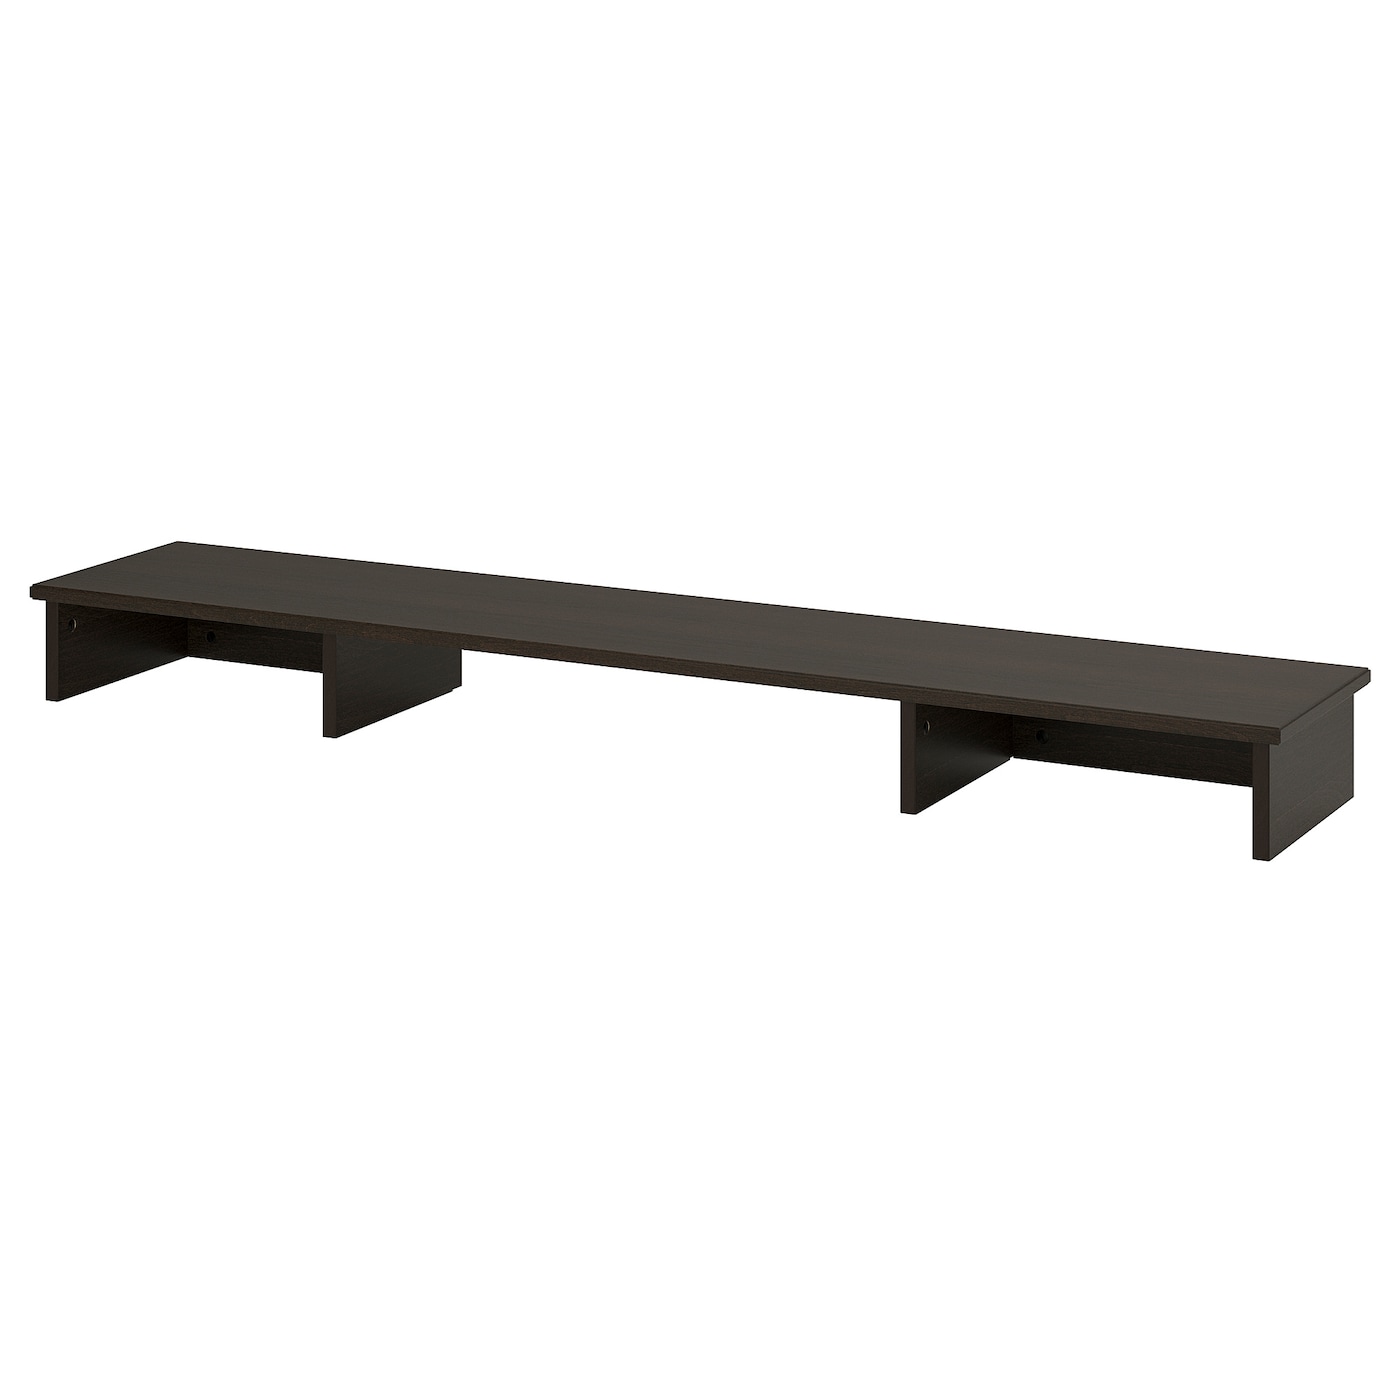 Приставка к столу - IDANÄS /IDANAS  IKEA/ ИДАНЭС ИКЕА, 150х30 см, коричневый